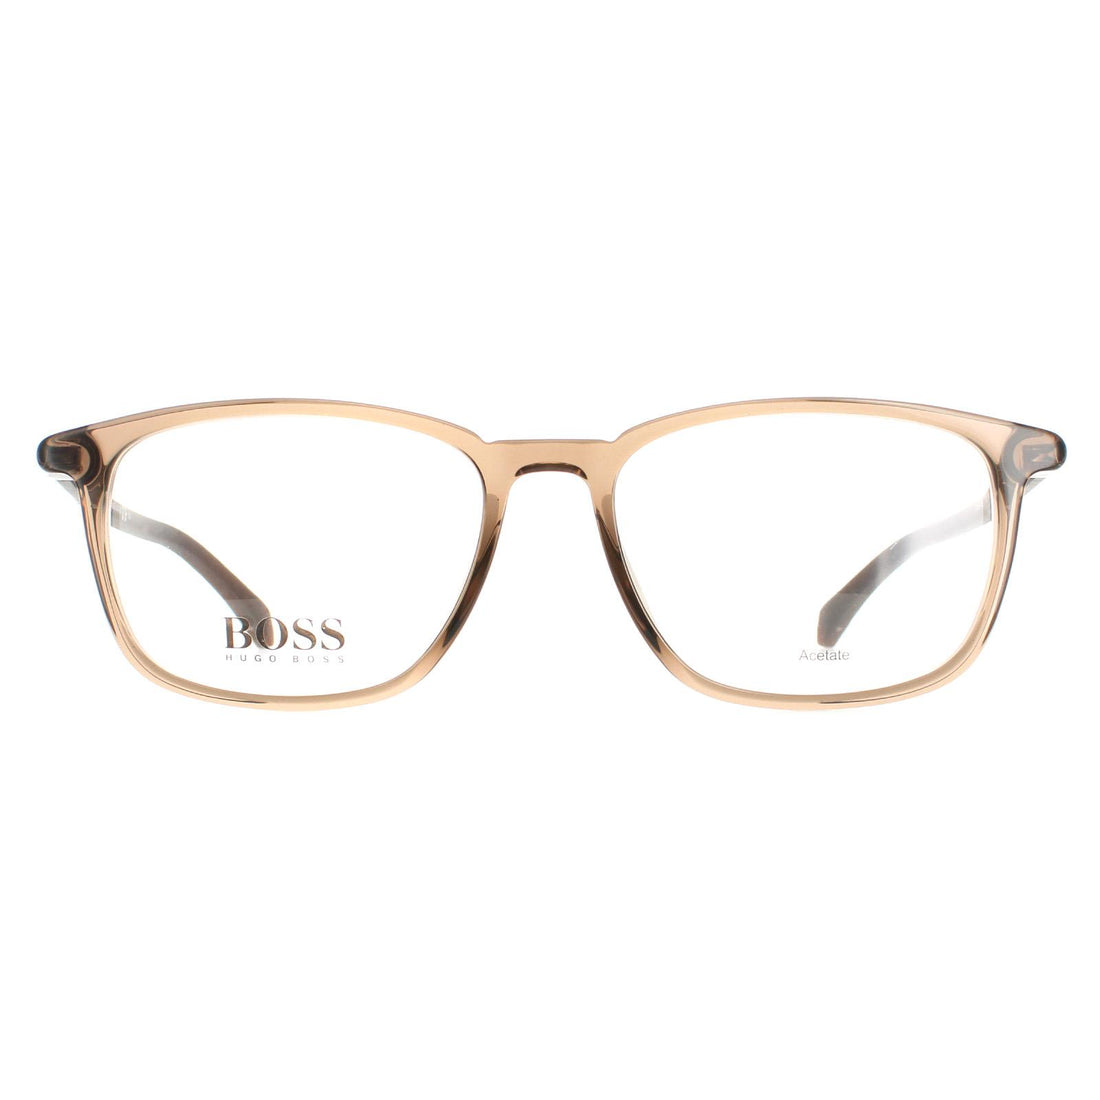 Hugo Boss BOSS 1133 Glasses Frames Transparent Brown